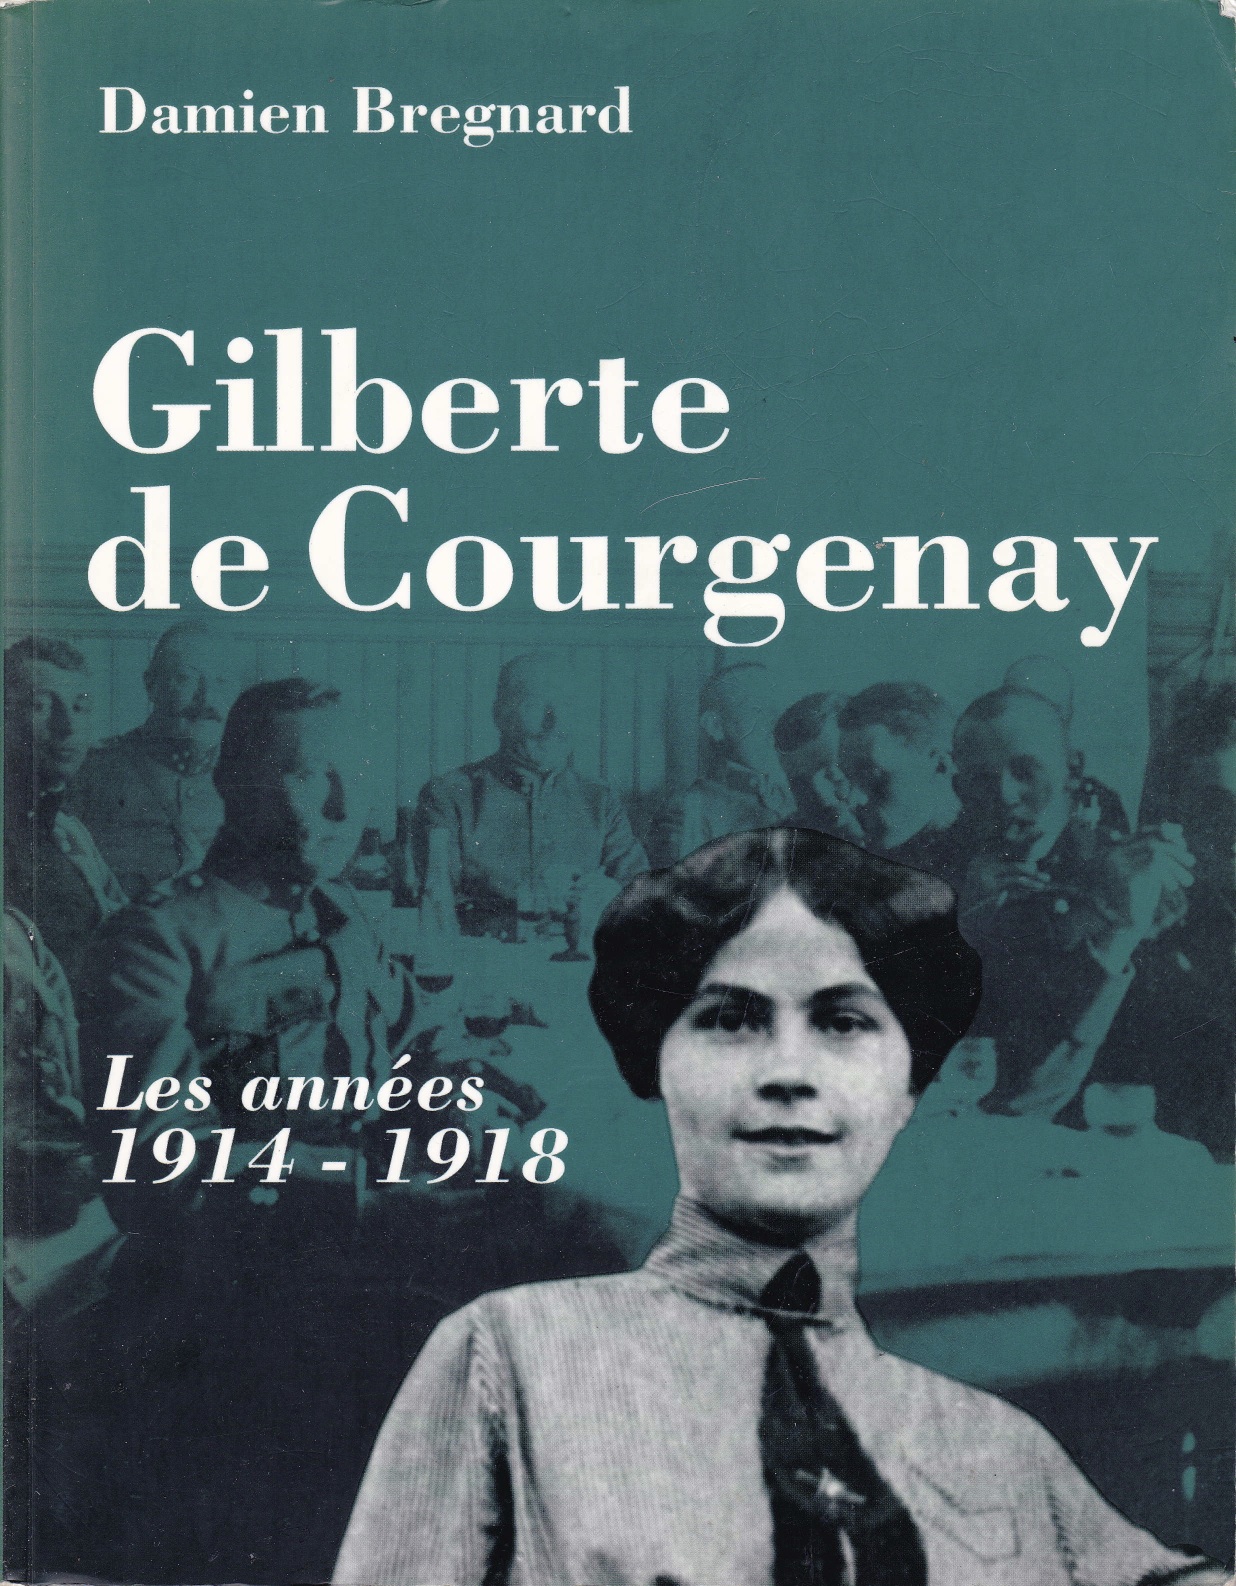 Gilberte de Courgenay - Gilberte de Courgenay